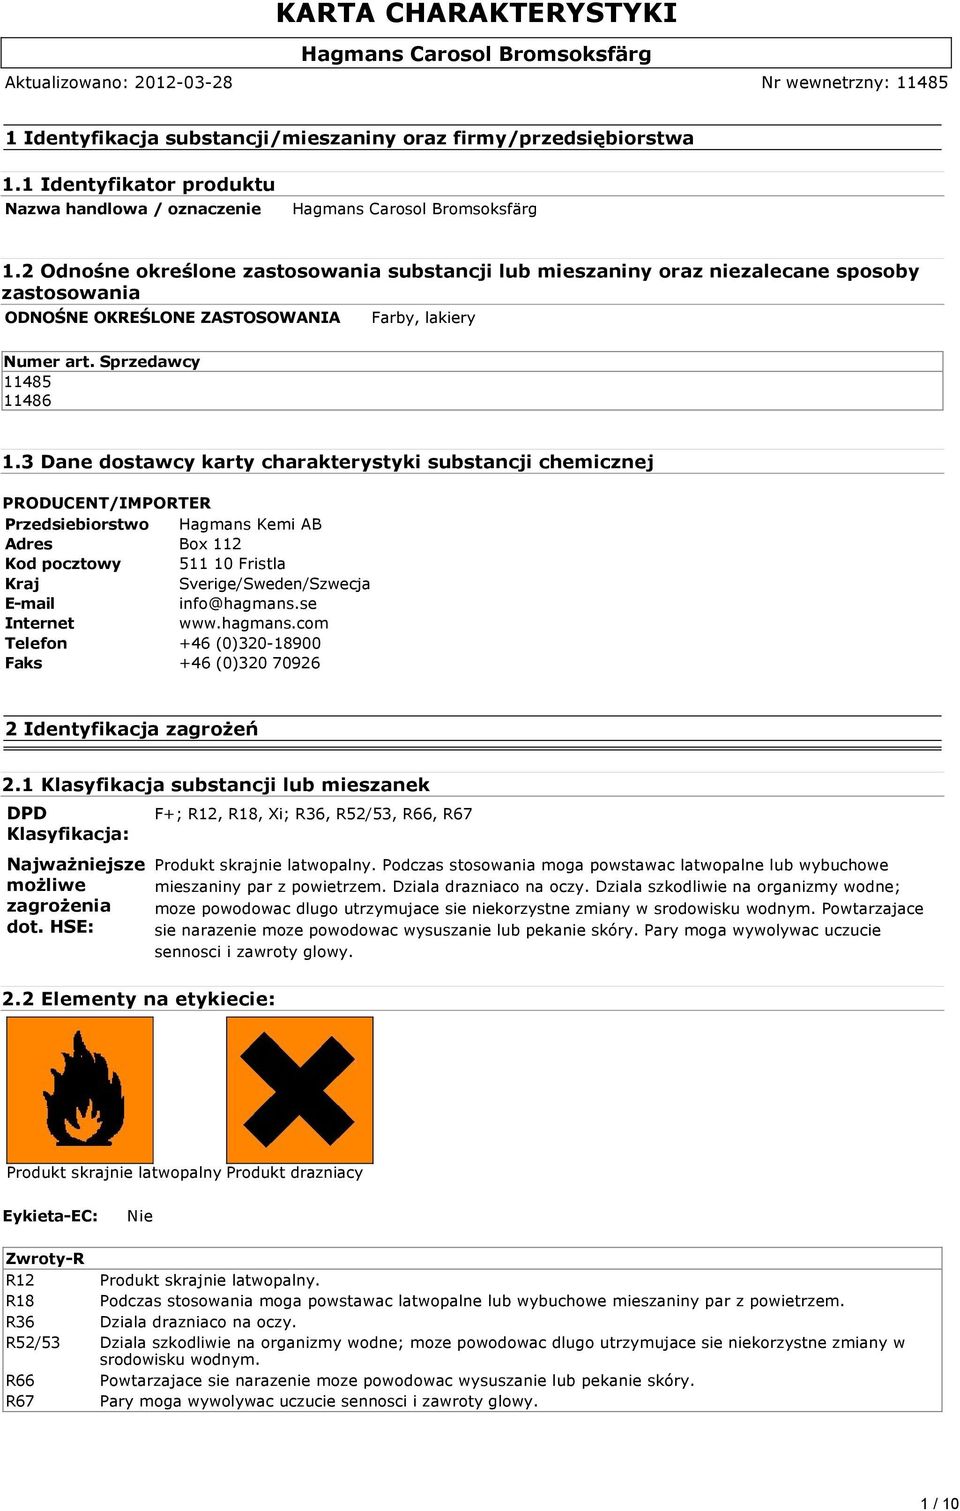 3 Dane dostawcy karty charakterystyki substancji chemicznej PRODUCENT/IMPORTER Przedsiebiorstwo Hagmans Kemi AB Adres Box 112 Kod pocztowy 511 10 Fristla Kraj Sverige/Sweden/Szwecja E-mail